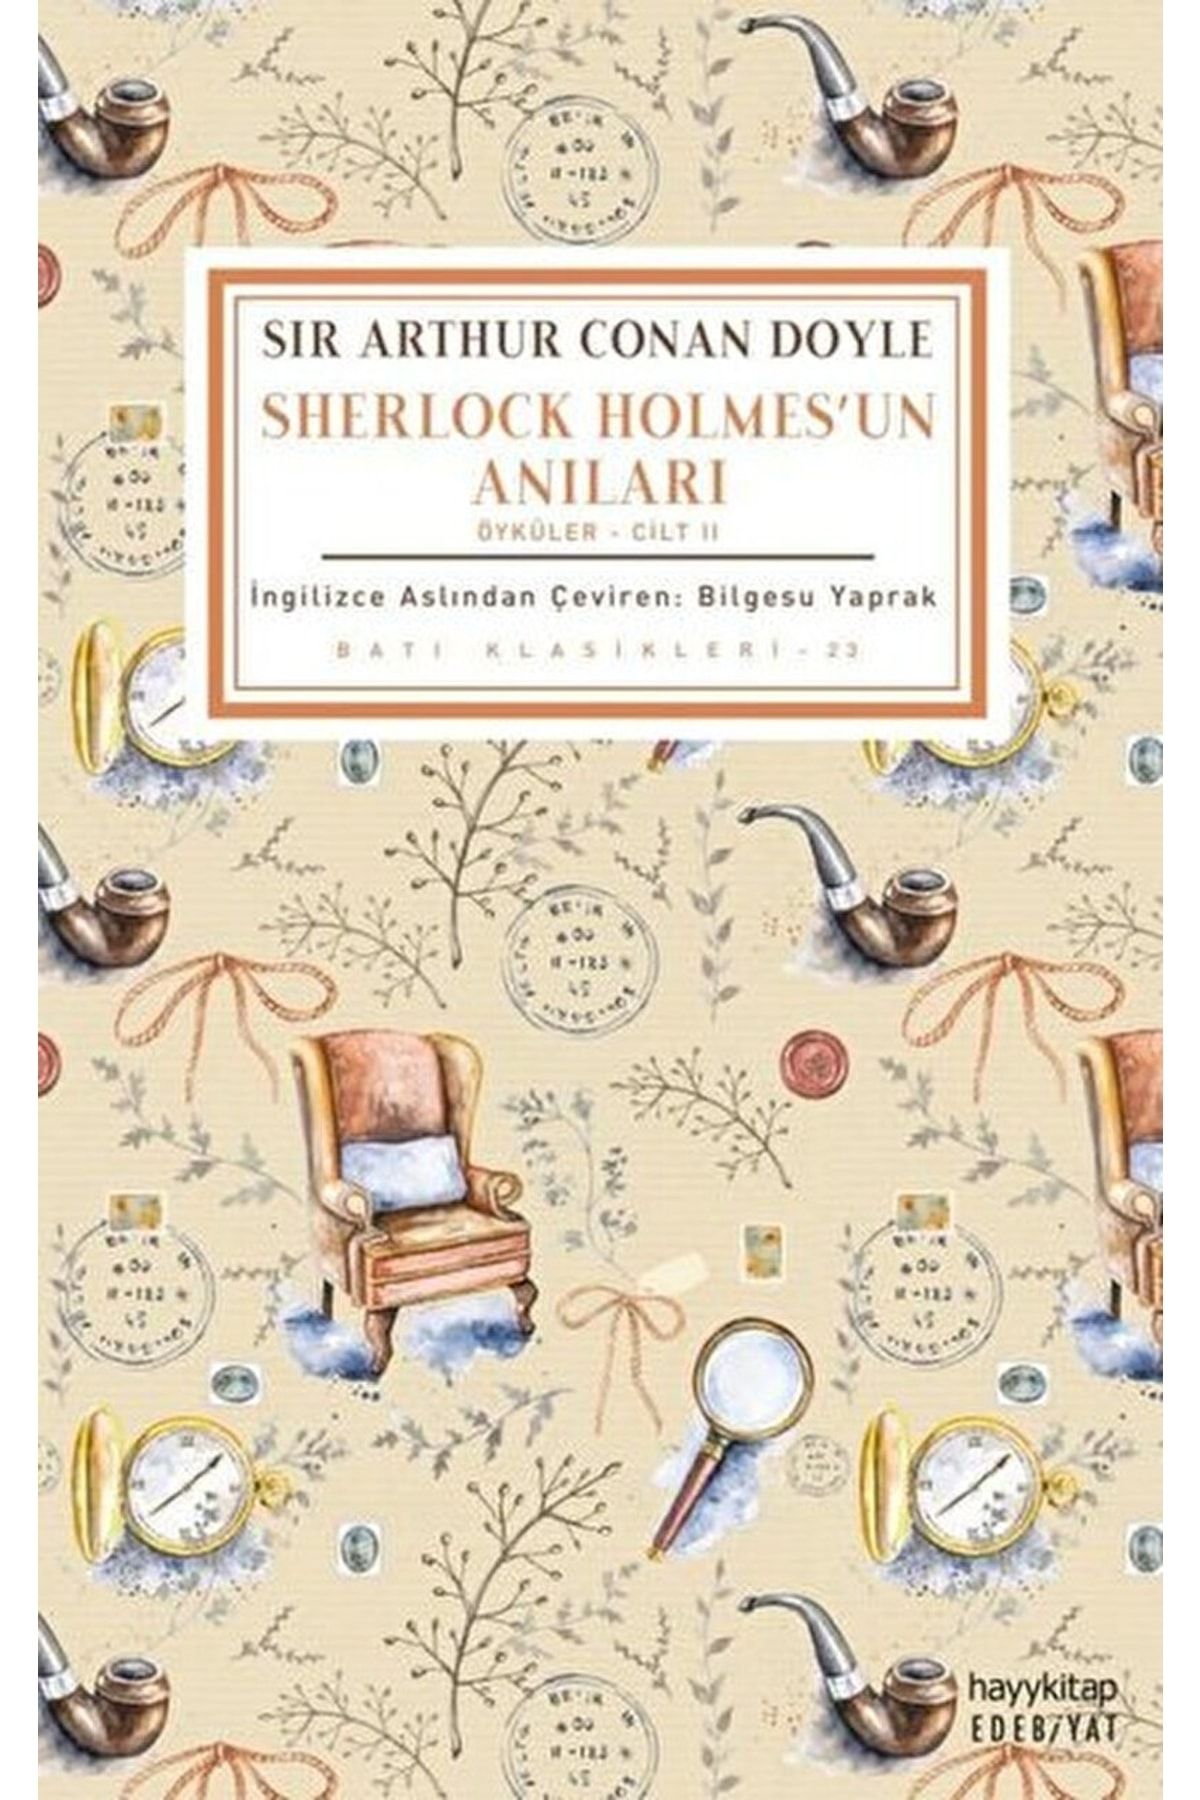 Hayykitap Sherlock Holmes'un Anıları (öyküler - Cilt 2) / Sir Arthur Conan Doyle / / 9786257685016